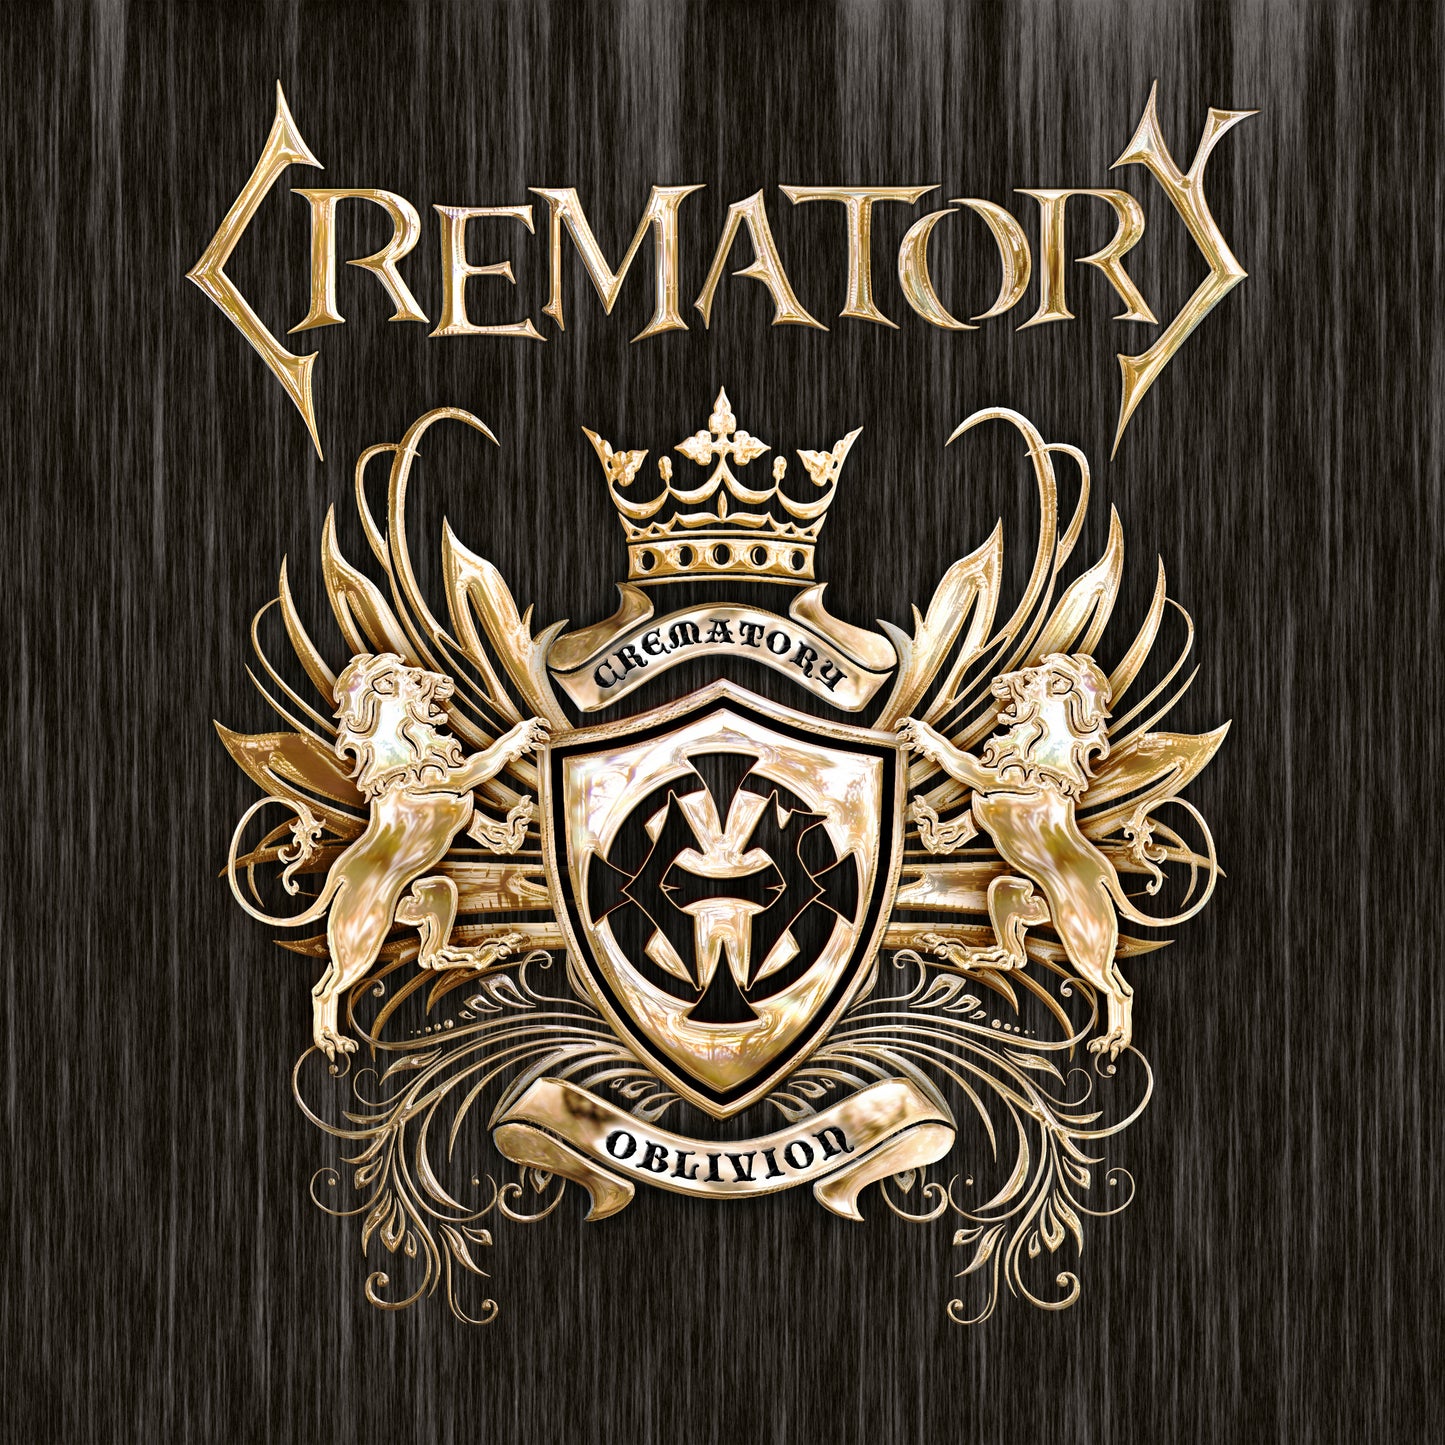 Crematory "Oblivion" LP